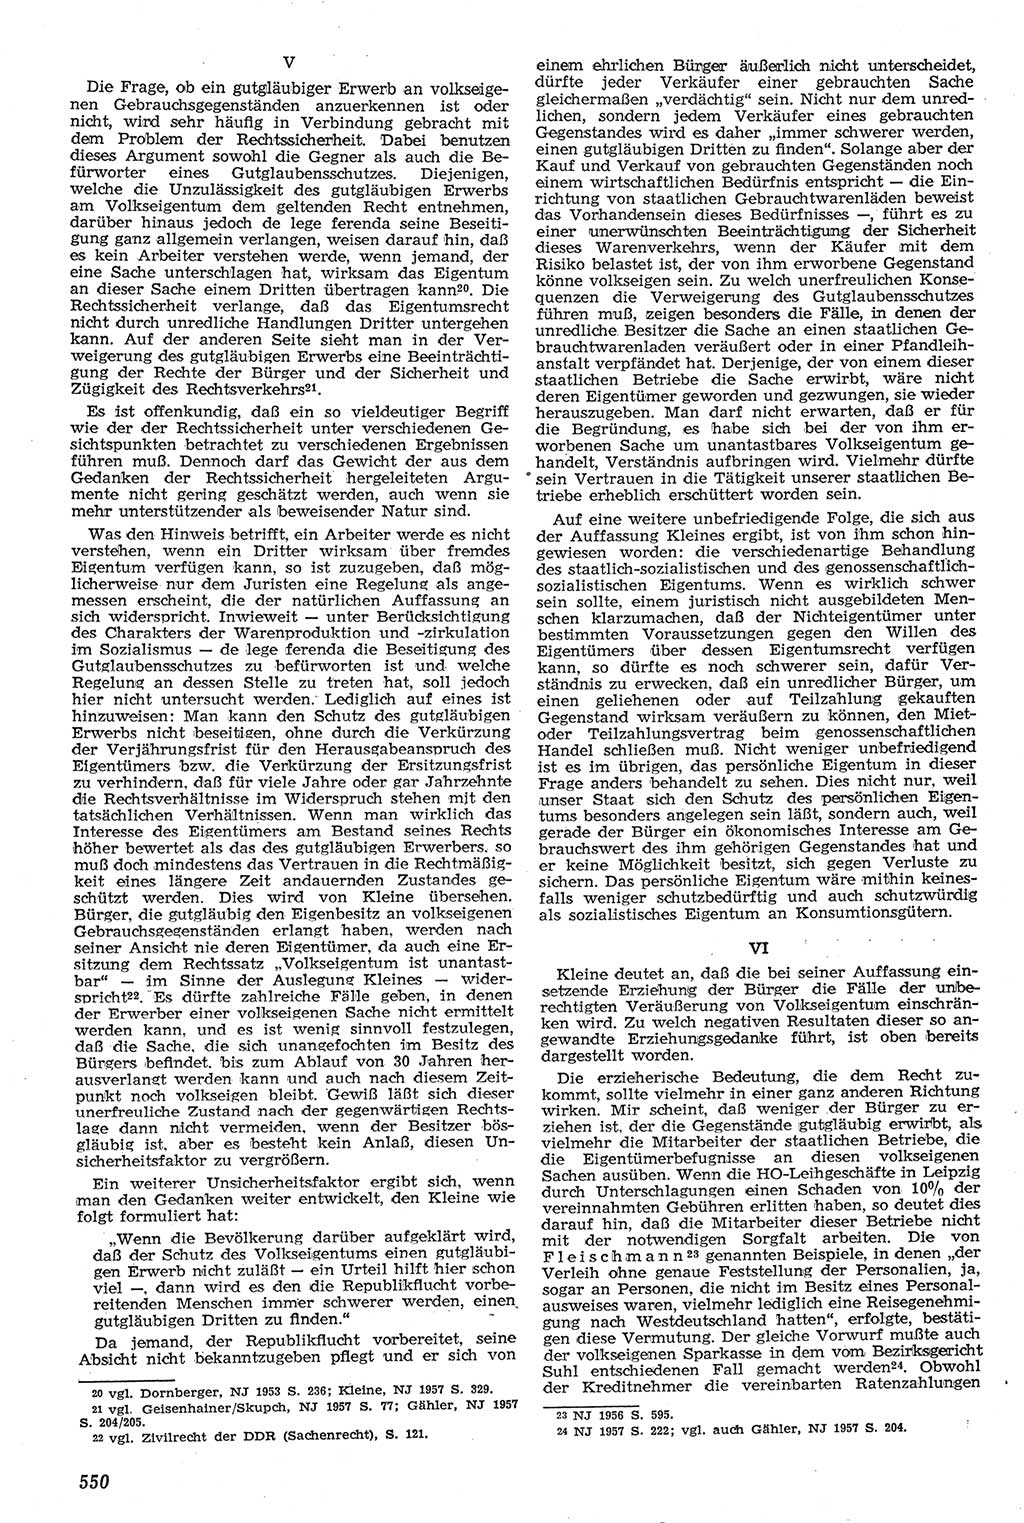 Neue Justiz (NJ), Zeitschrift für Recht und Rechtswissenschaft [Deutsche Demokratische Republik (DDR)], 11. Jahrgang 1957, Seite 550 (NJ DDR 1957, S. 550)